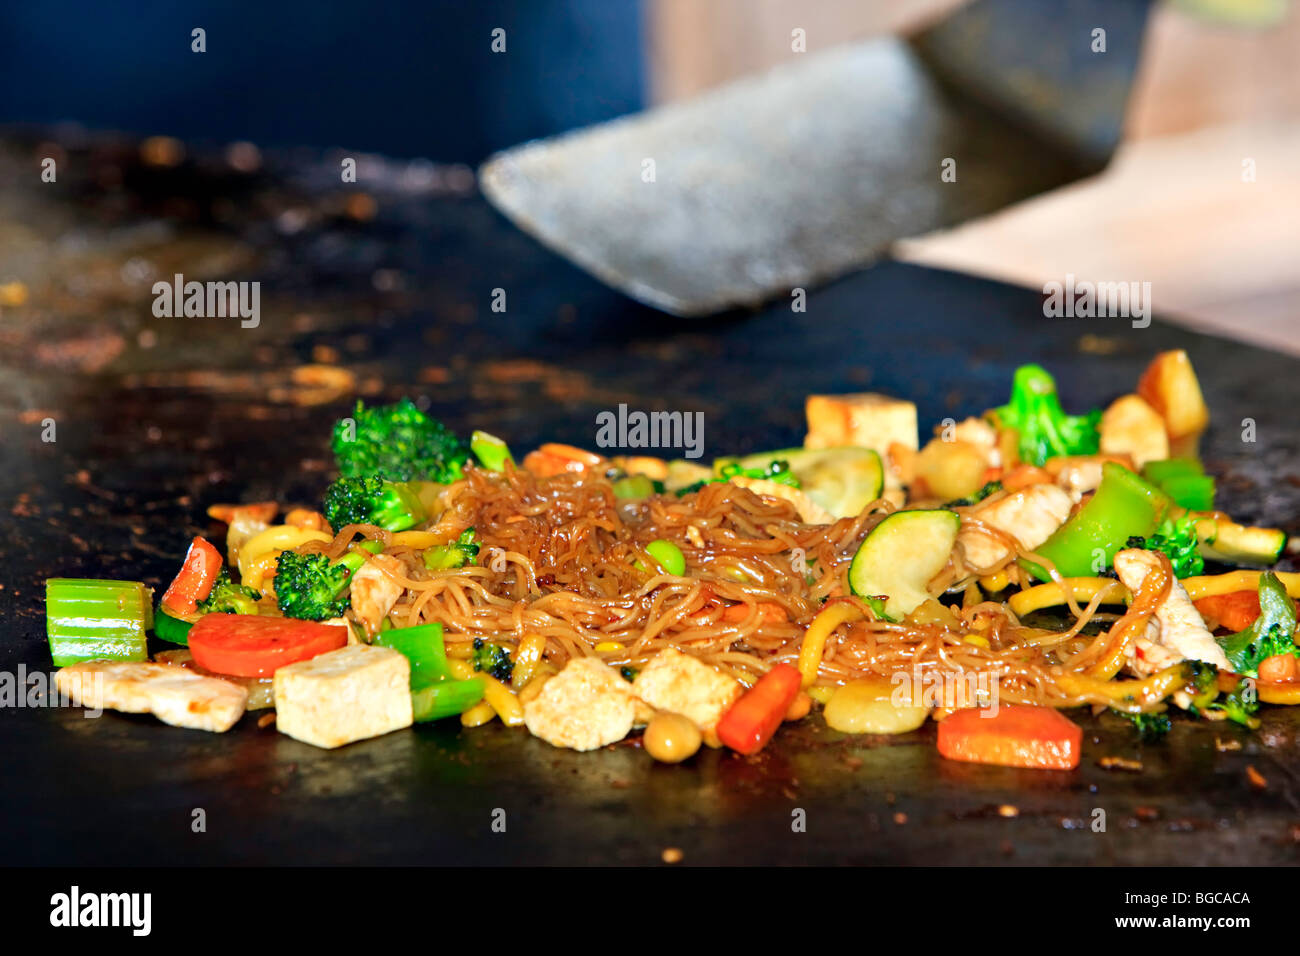 La préparation de l'aliment à la Mongolie célèbre Grill Restaurant sauté dans le village de Whistler, Colombie-Britannique, Canada. R Propriété Banque D'Images